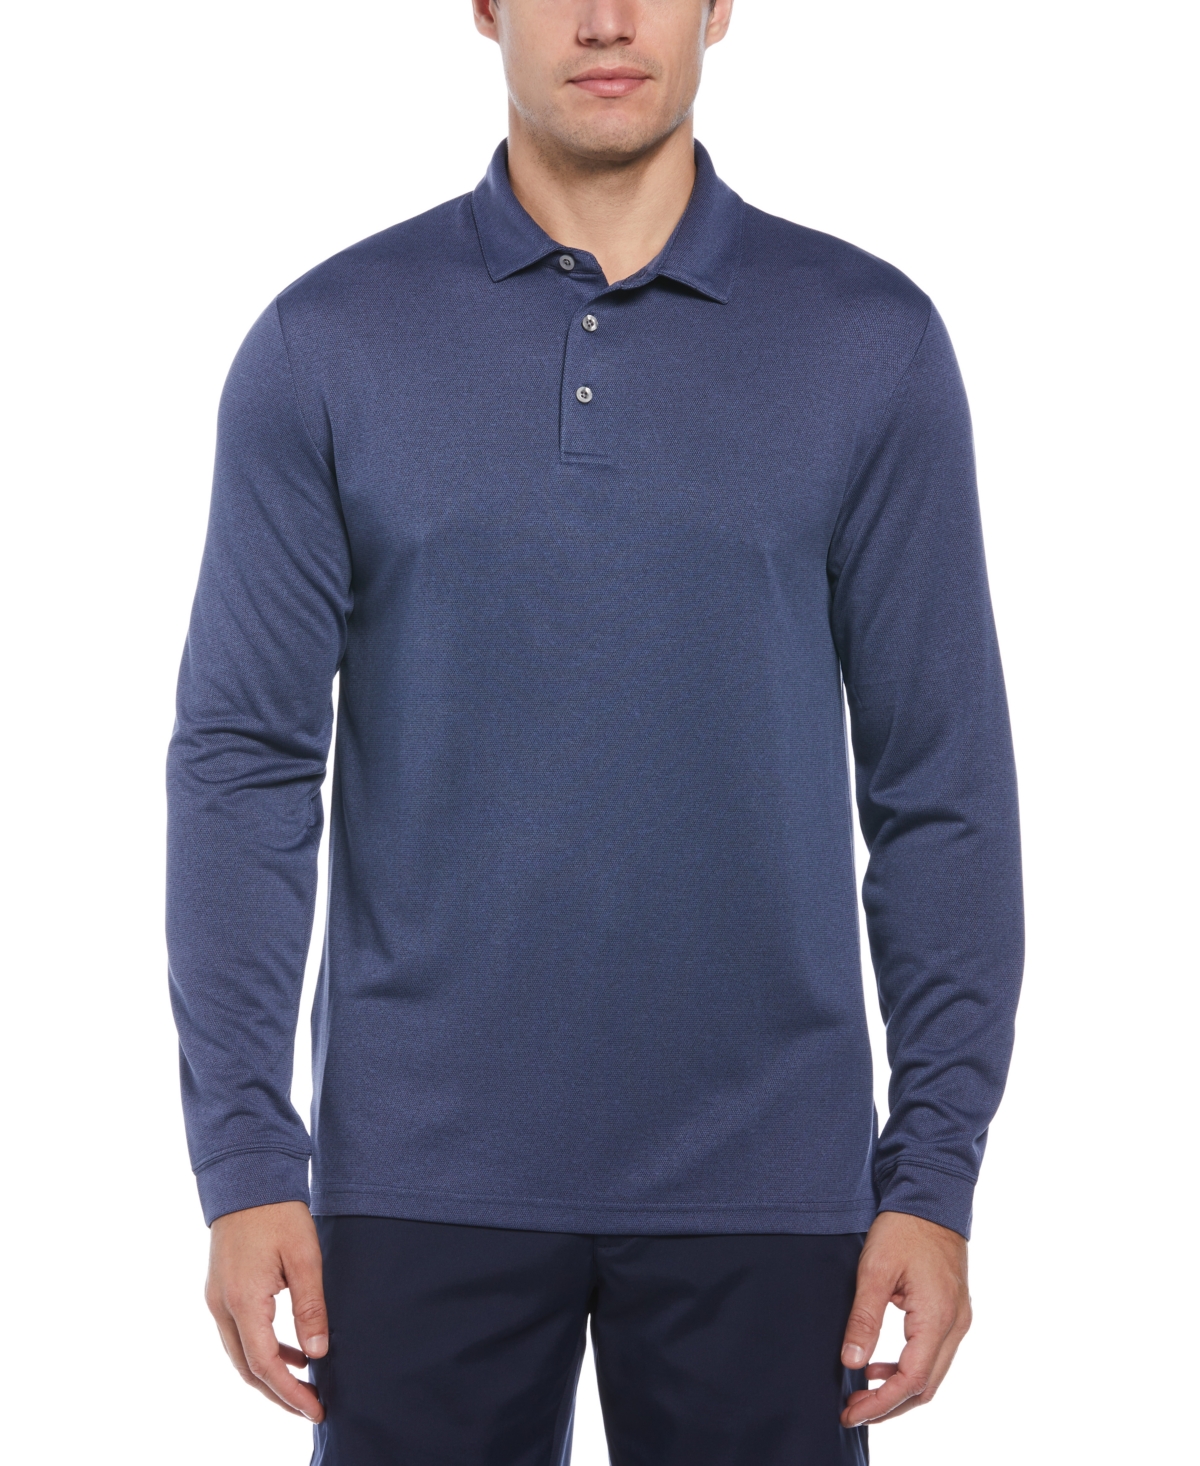 Men's Micro Birdseye Long Sleeve Golf Polo Shirt - Navy Indigo Heather